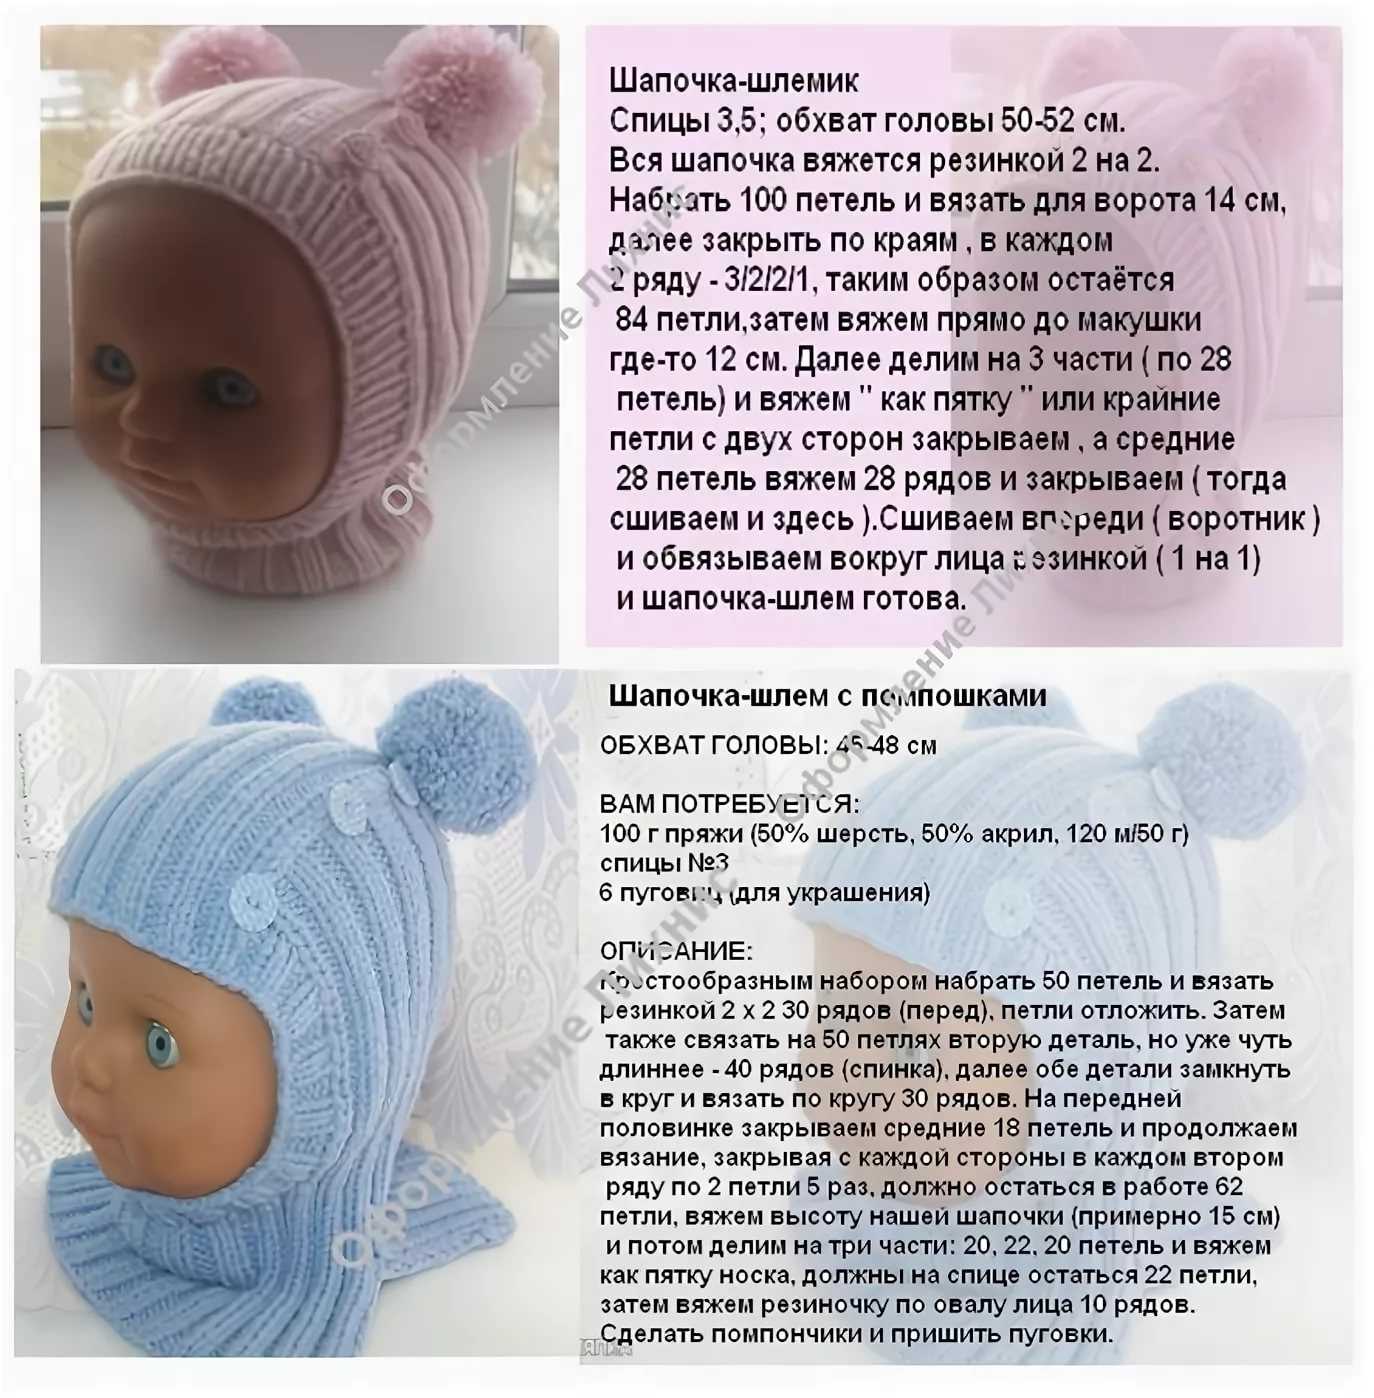 Схема шапки для новорожденного